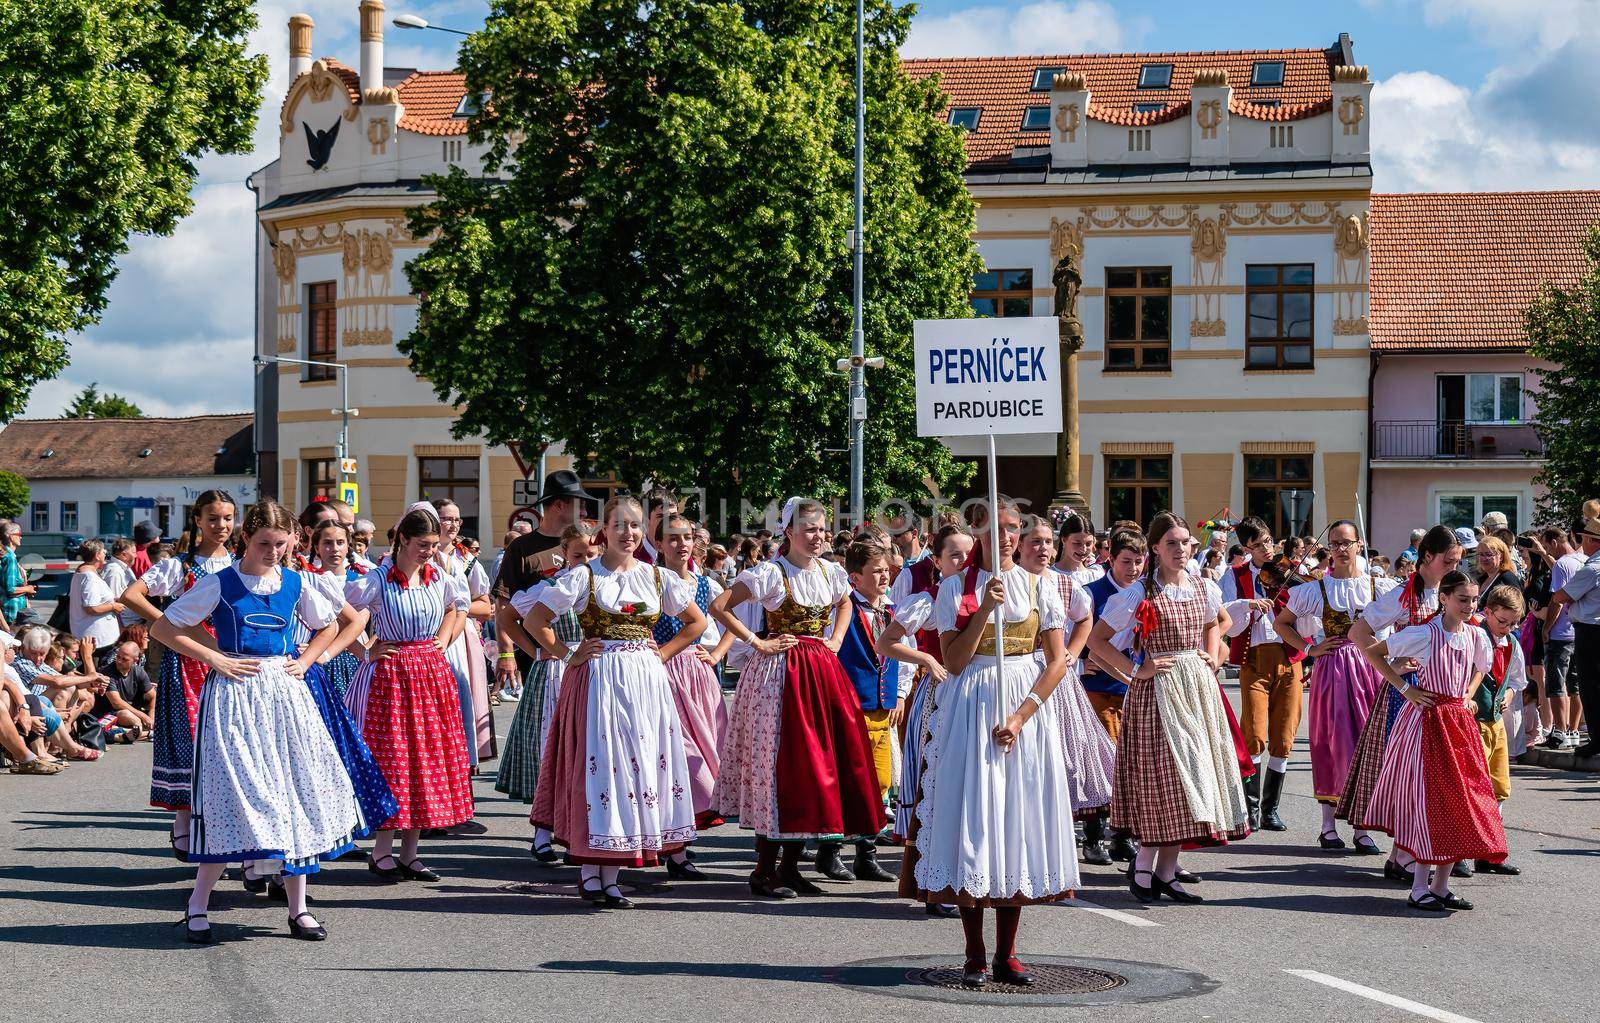 Parade of the Folokorist Festival in Straznice by rostik924